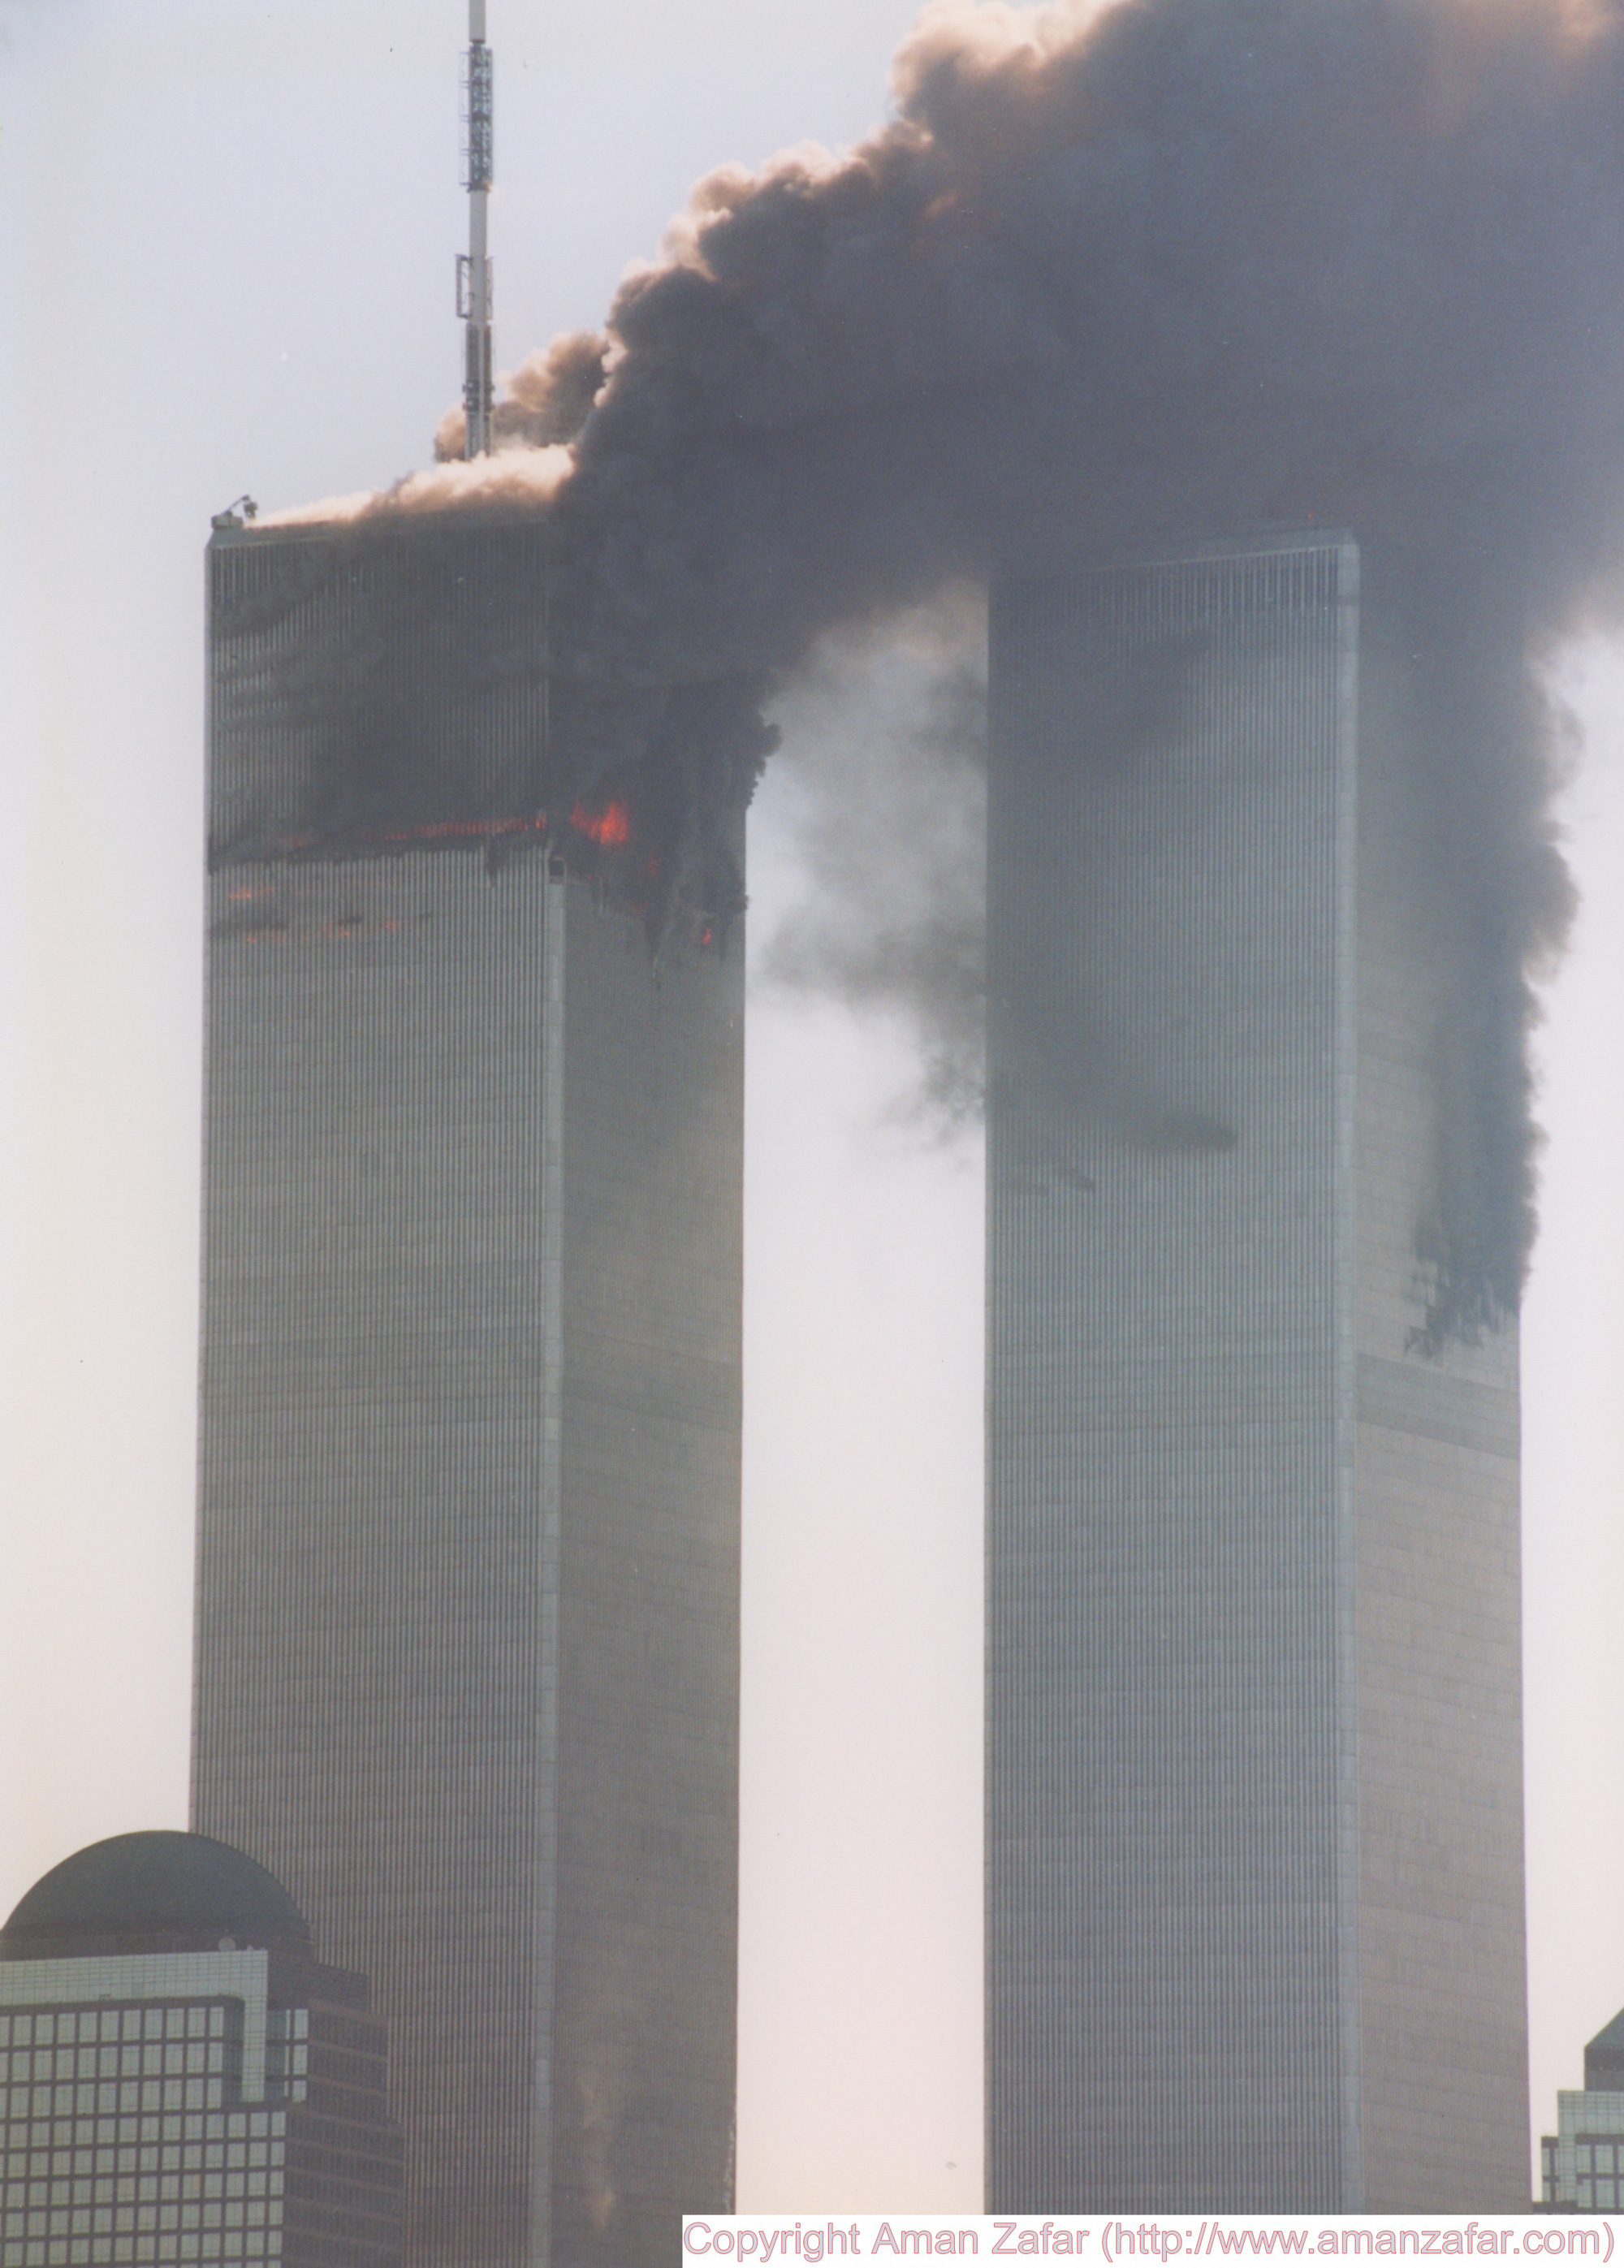 Khoảnh khắc yên bình của Trung tâm Thương mại Thế giới trước vụ khủng bố 11/9 nằm lại trong ký ức của người Mỹ - Ảnh 11.